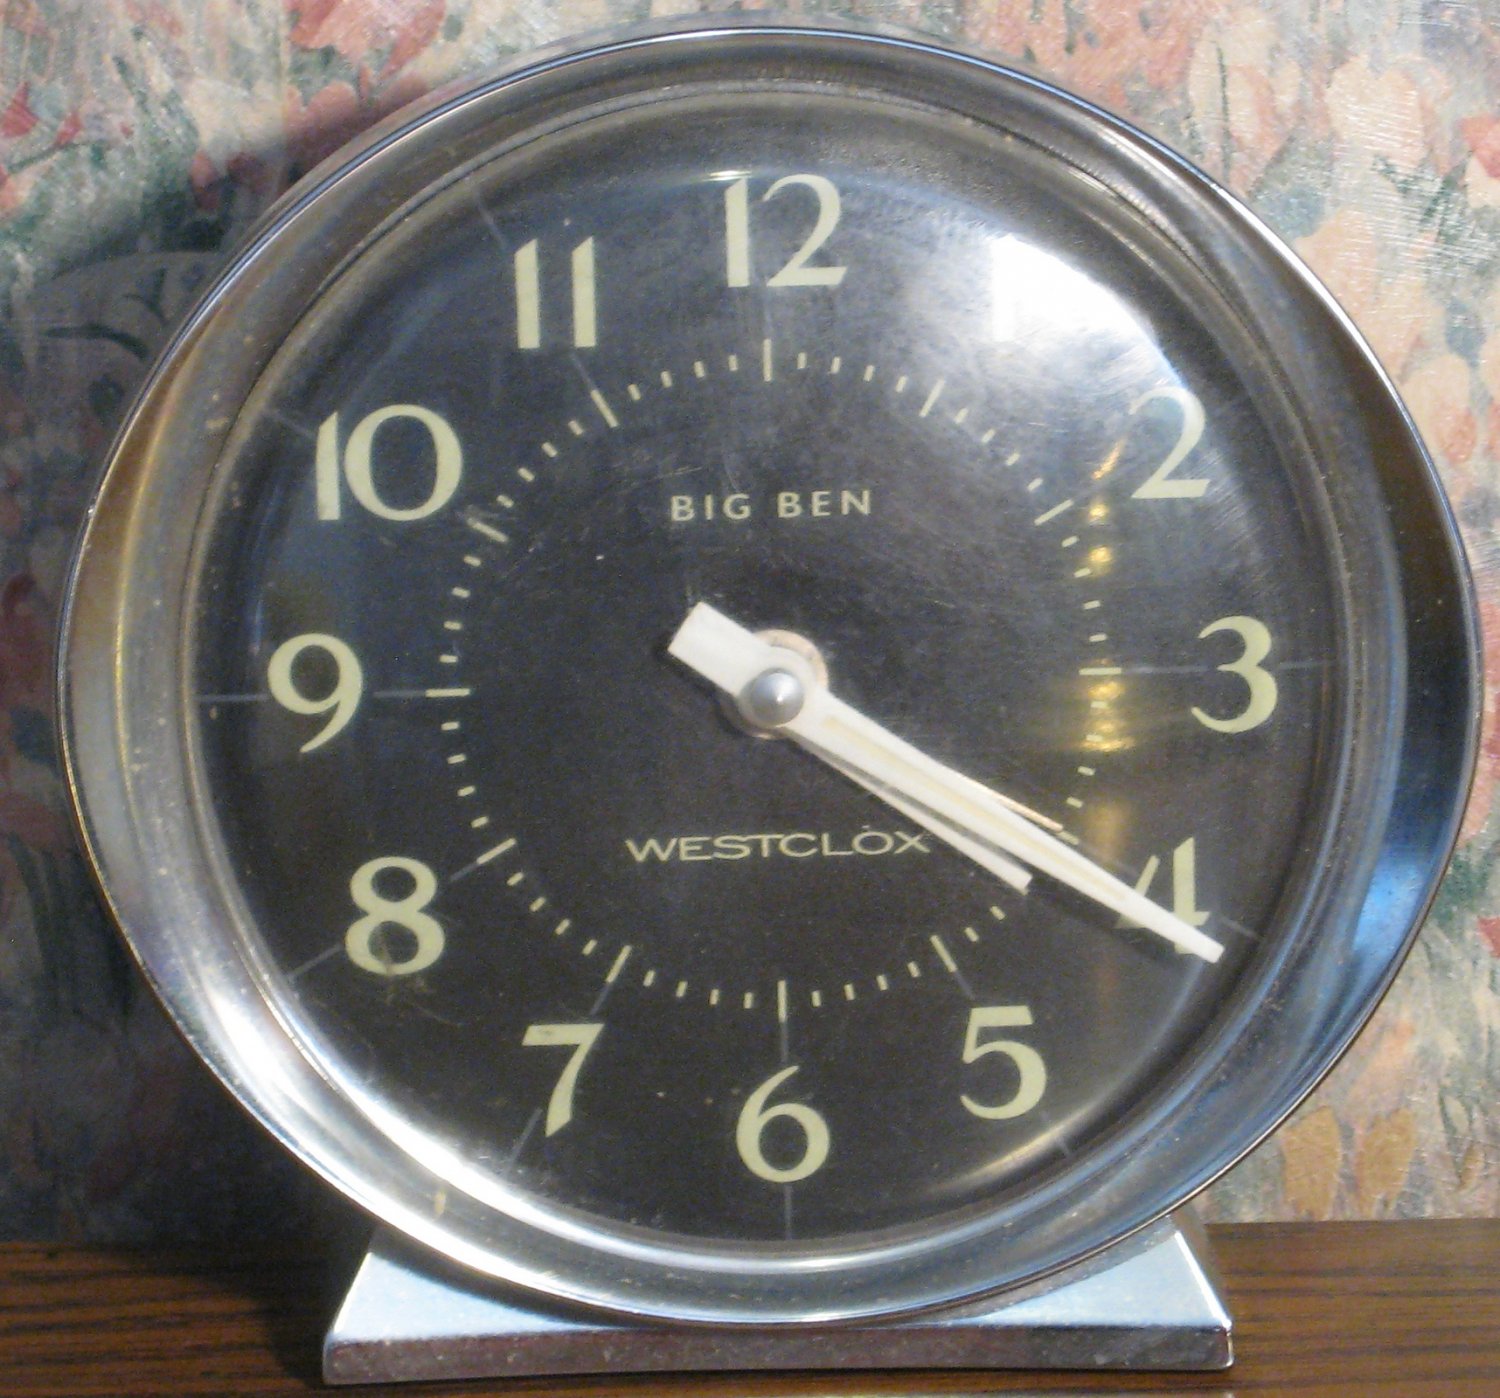 Westclox Big Ben Wind Up Alarm Clock Model 0348 - Luminous Hands - 1980s Vintage